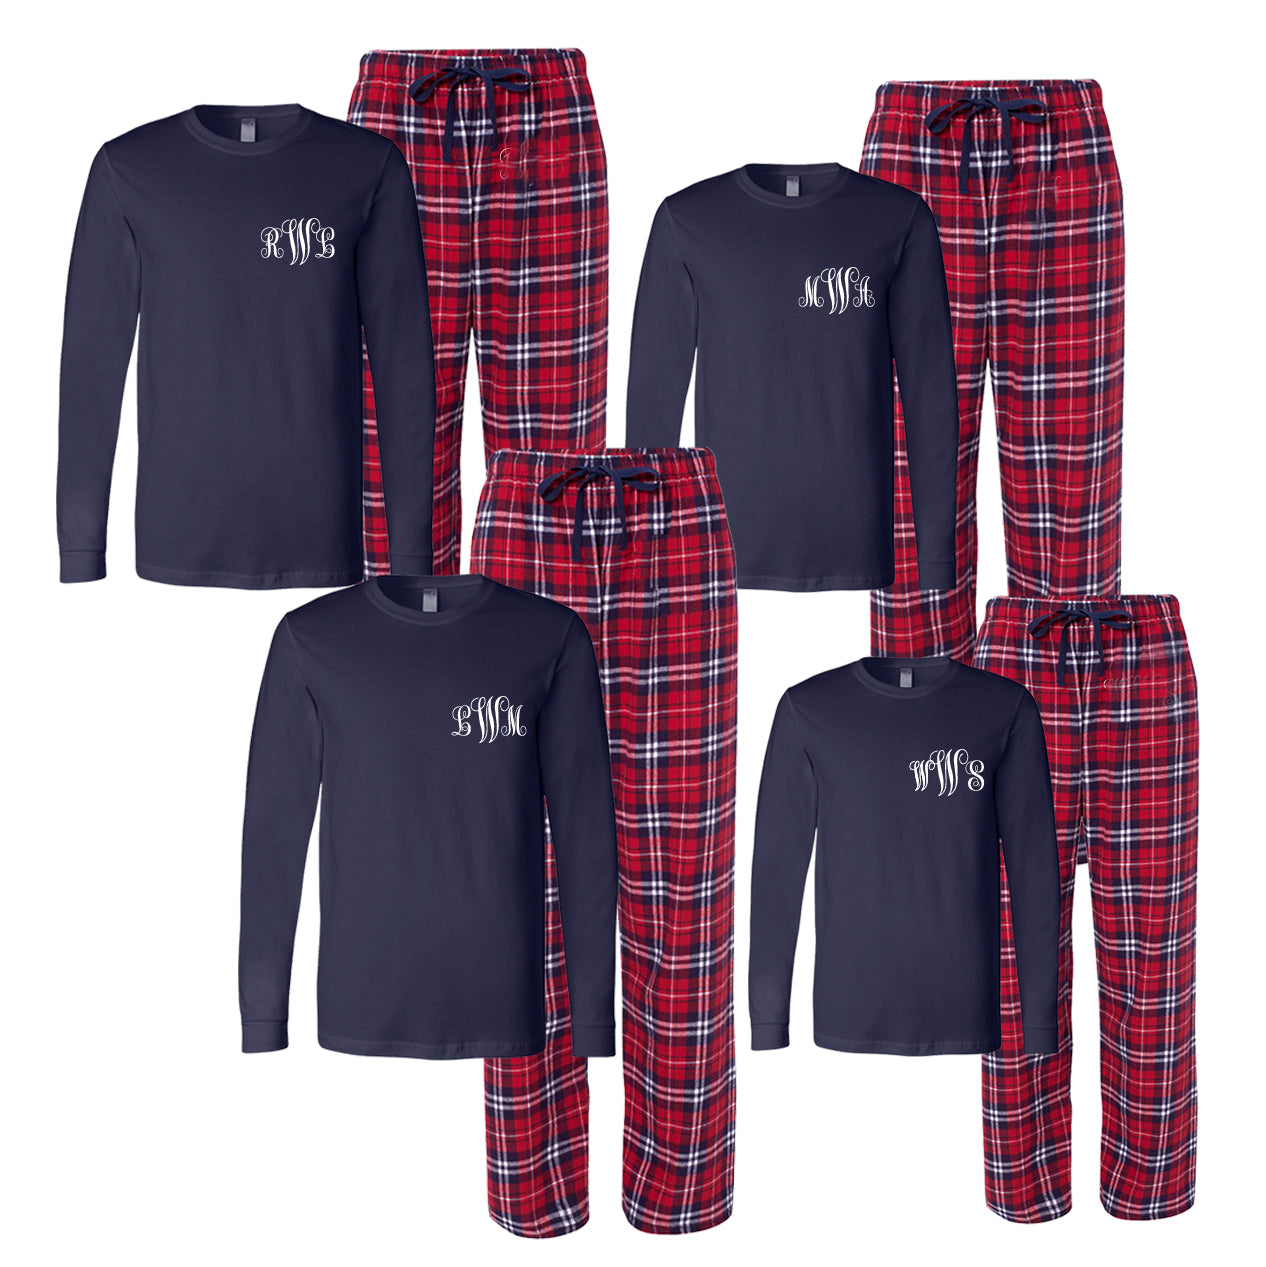 zoeysattic Monogram Shirt and/or Pajama Pants for Christmas - Buffalo Plaid Monogram Pajama Pants Ornament Monogram Christmas Family Pajamas